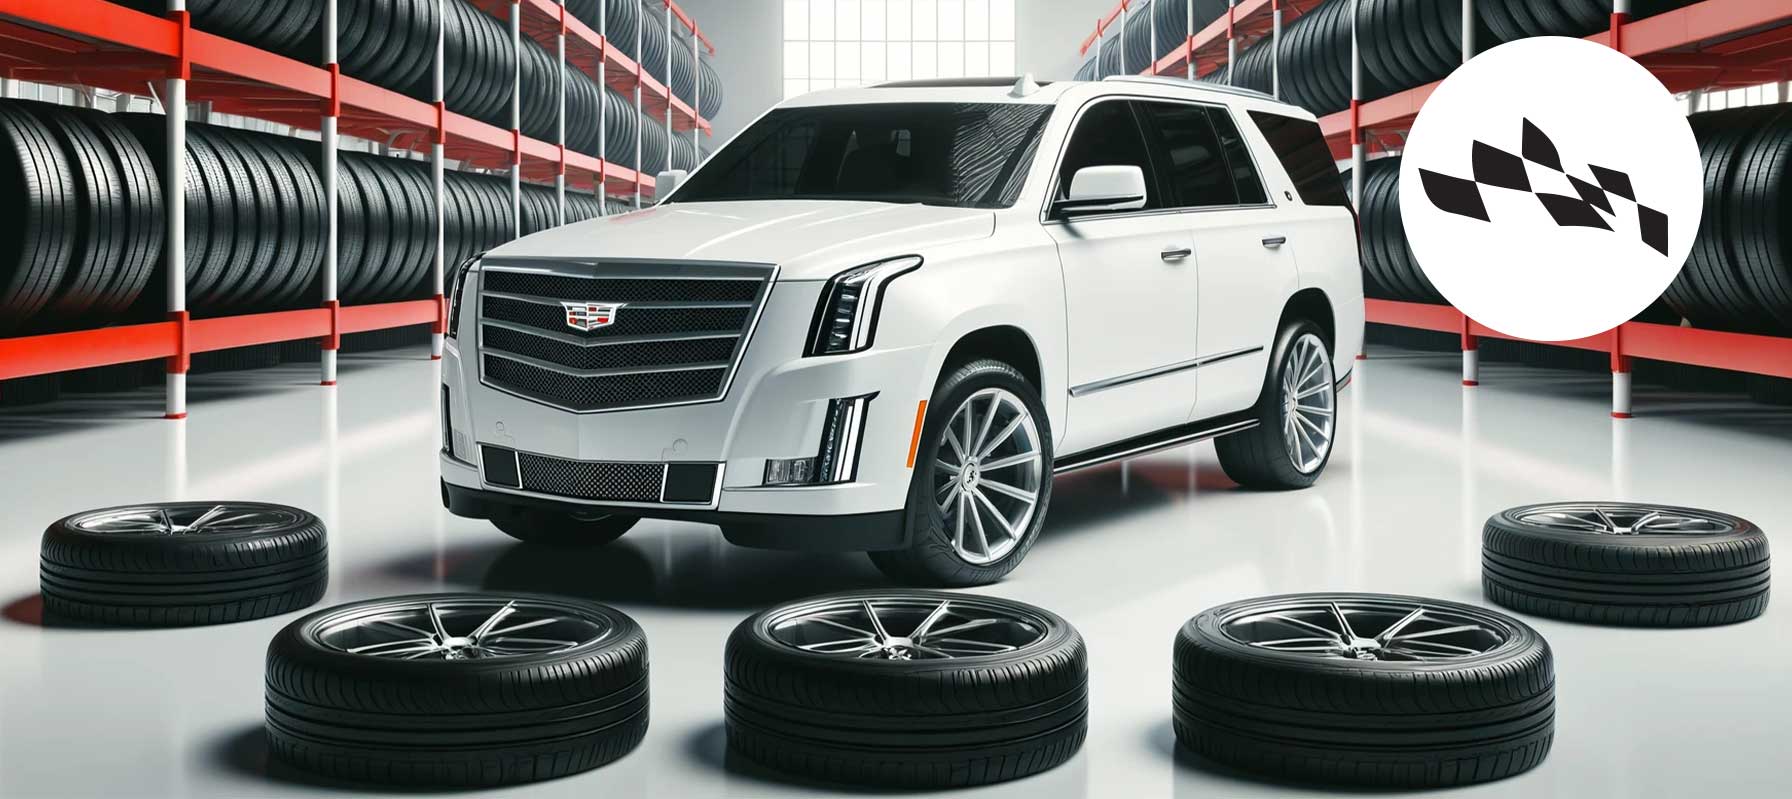 Cadillac tires warehouse image